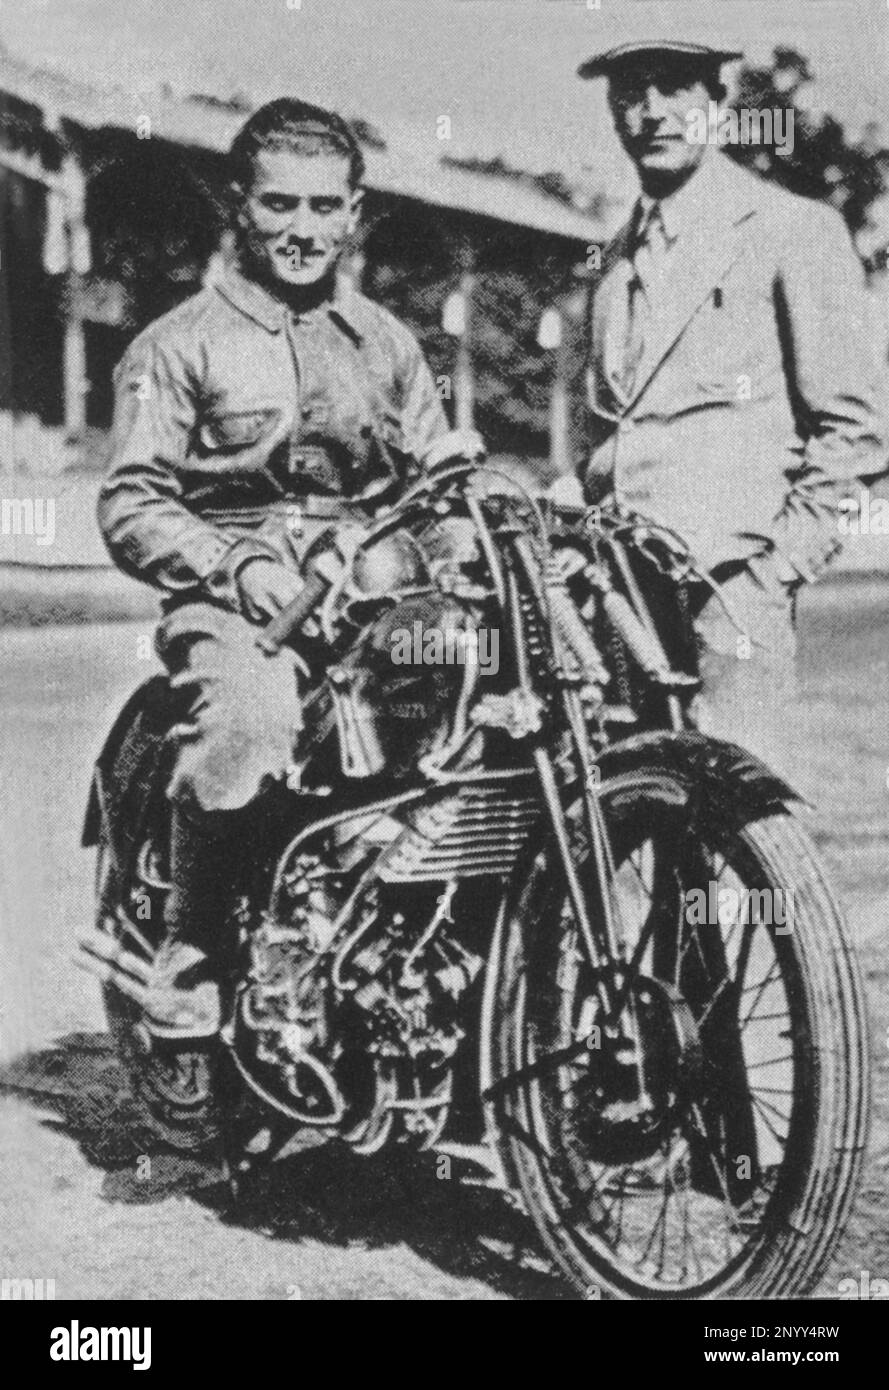 1931 , Monza , Mailand , Italien : der Pilot Biker SIRO CASALE mit CARLO GUZZI ( Stand ) und dem Guzzi Bike Quattro Cilindri da Competizione - MOTO - MOTOCICLETTA - MOTOCICLISMO - SPORT - Pilota - industriale --- Archivio GBB Stockfoto